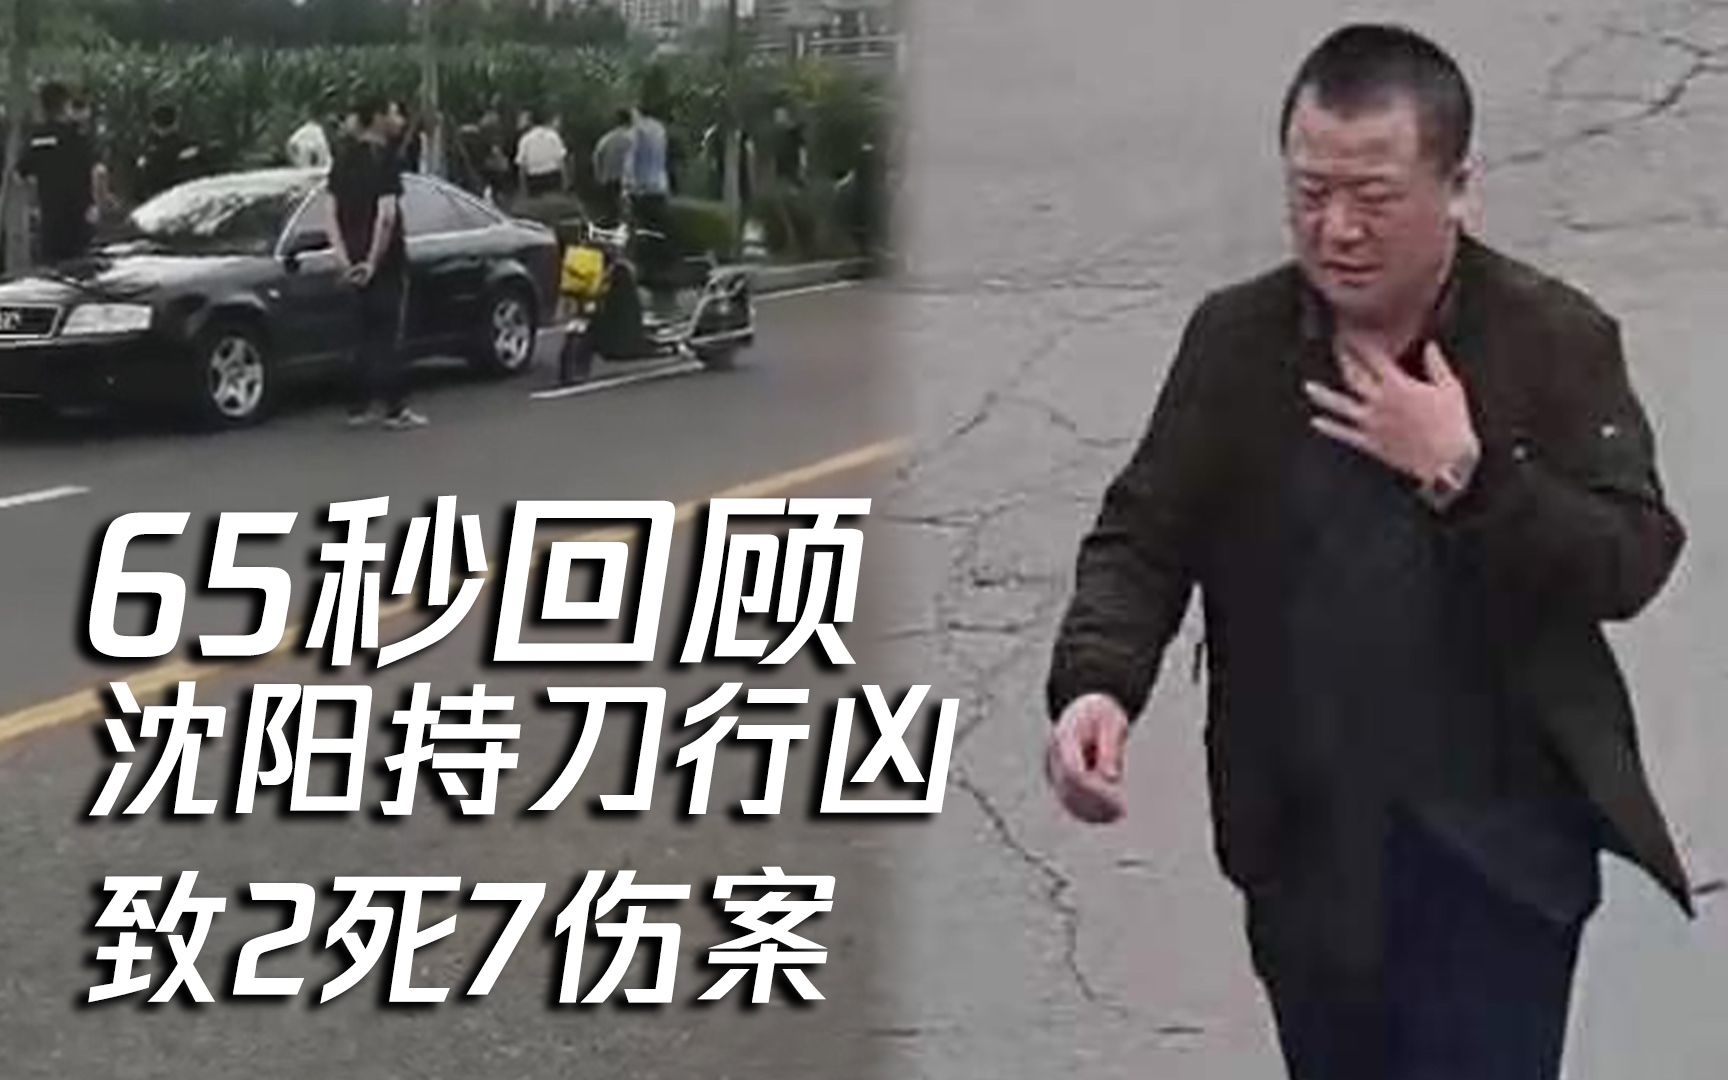 广东幼儿园6死1伤 中国治安状况堪忧 – 博讯新闻网